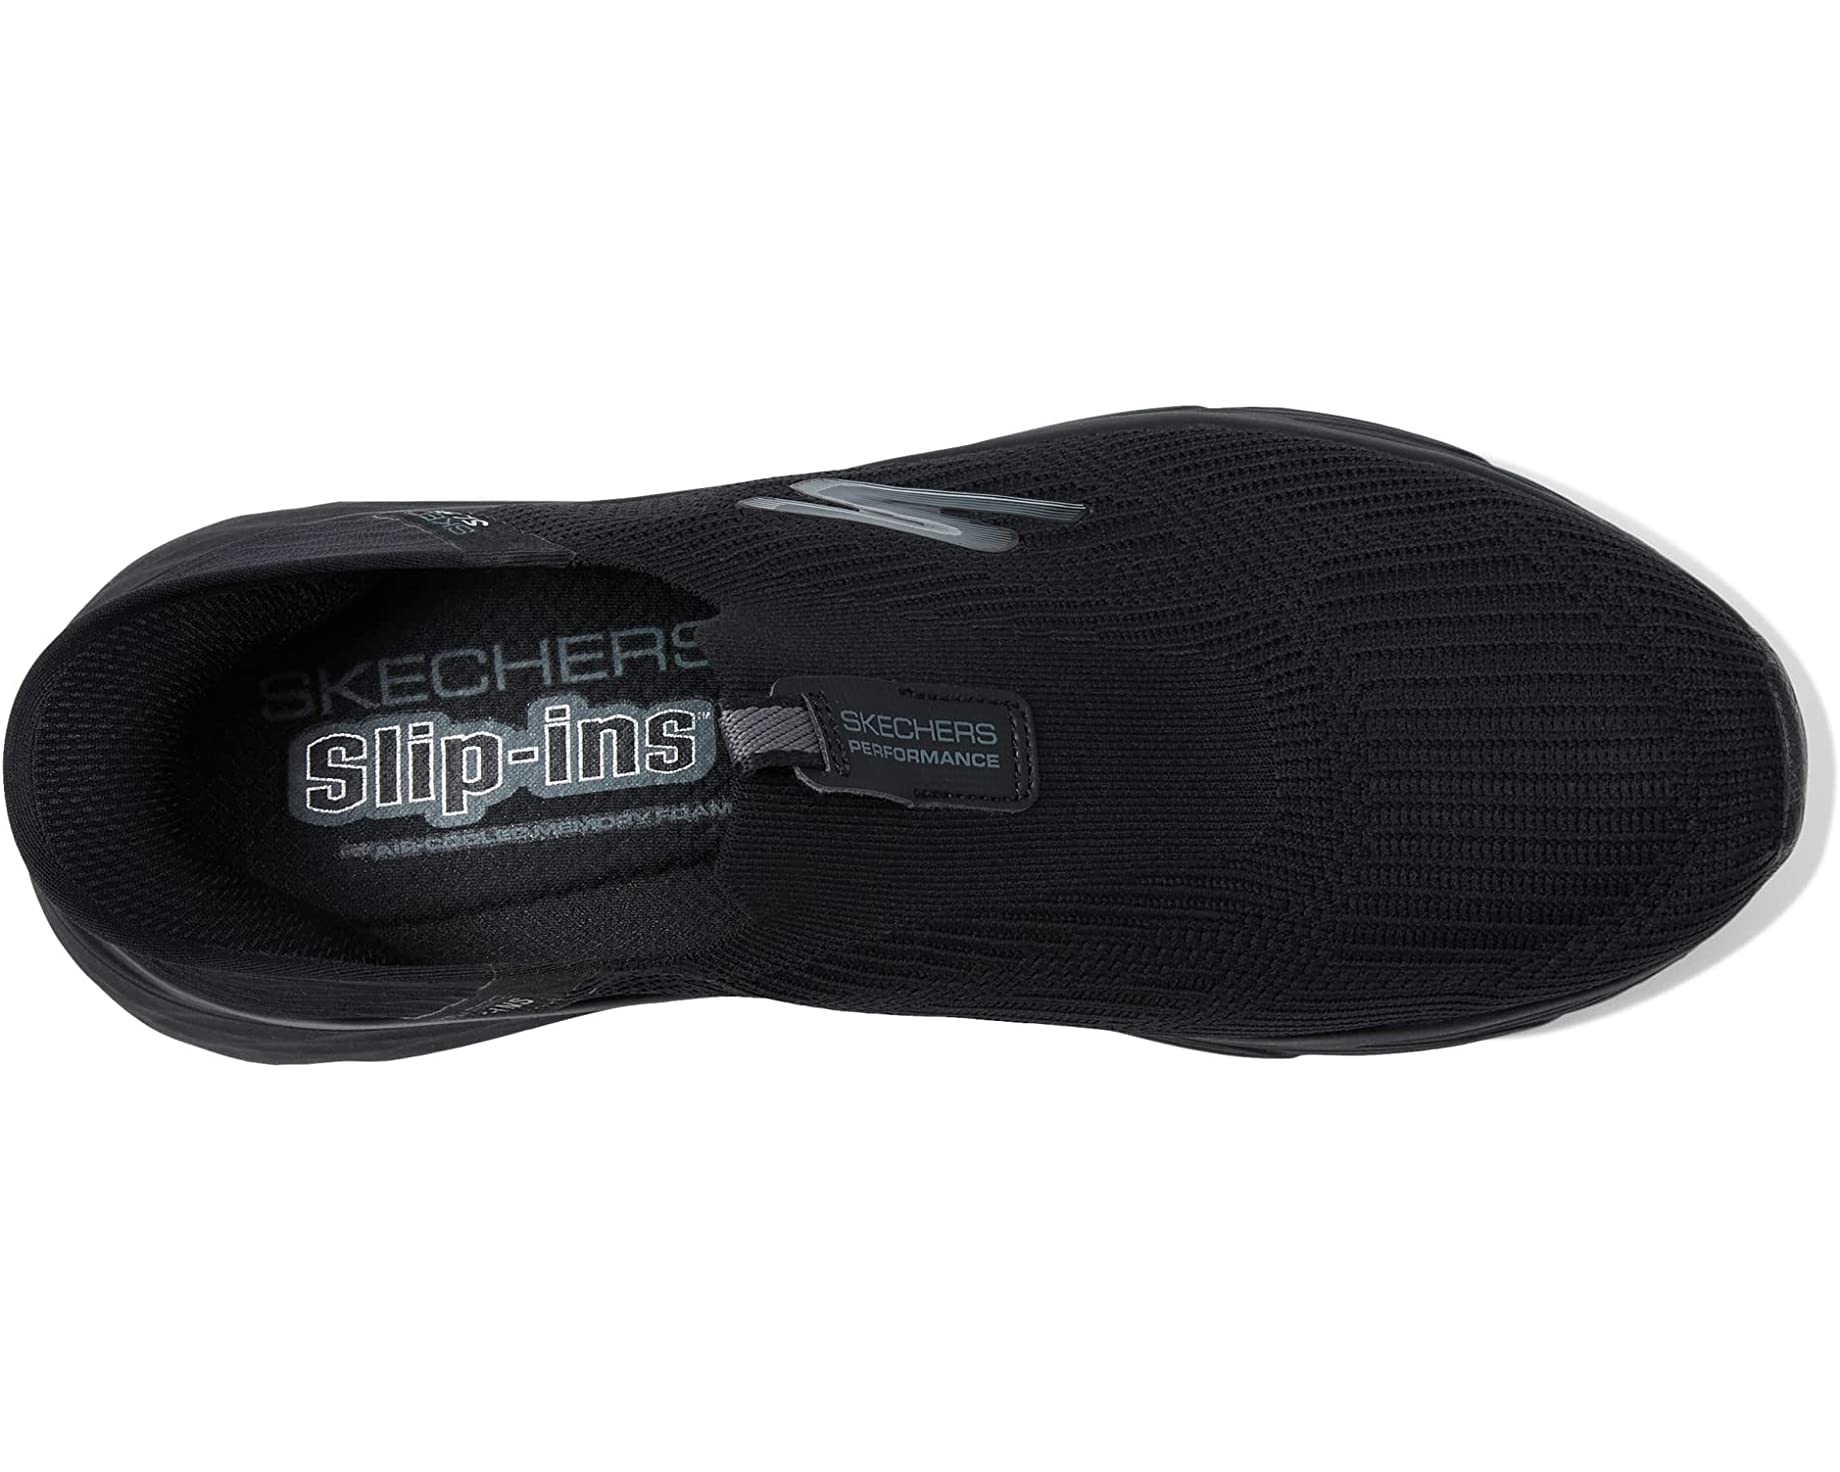 Кроссовки Max Cushioning Elite Slip-Ins - Avantageous SKECHERS, черный кроссовки нейтрального цвета max cushioning elite skechers performance цвет burgundy